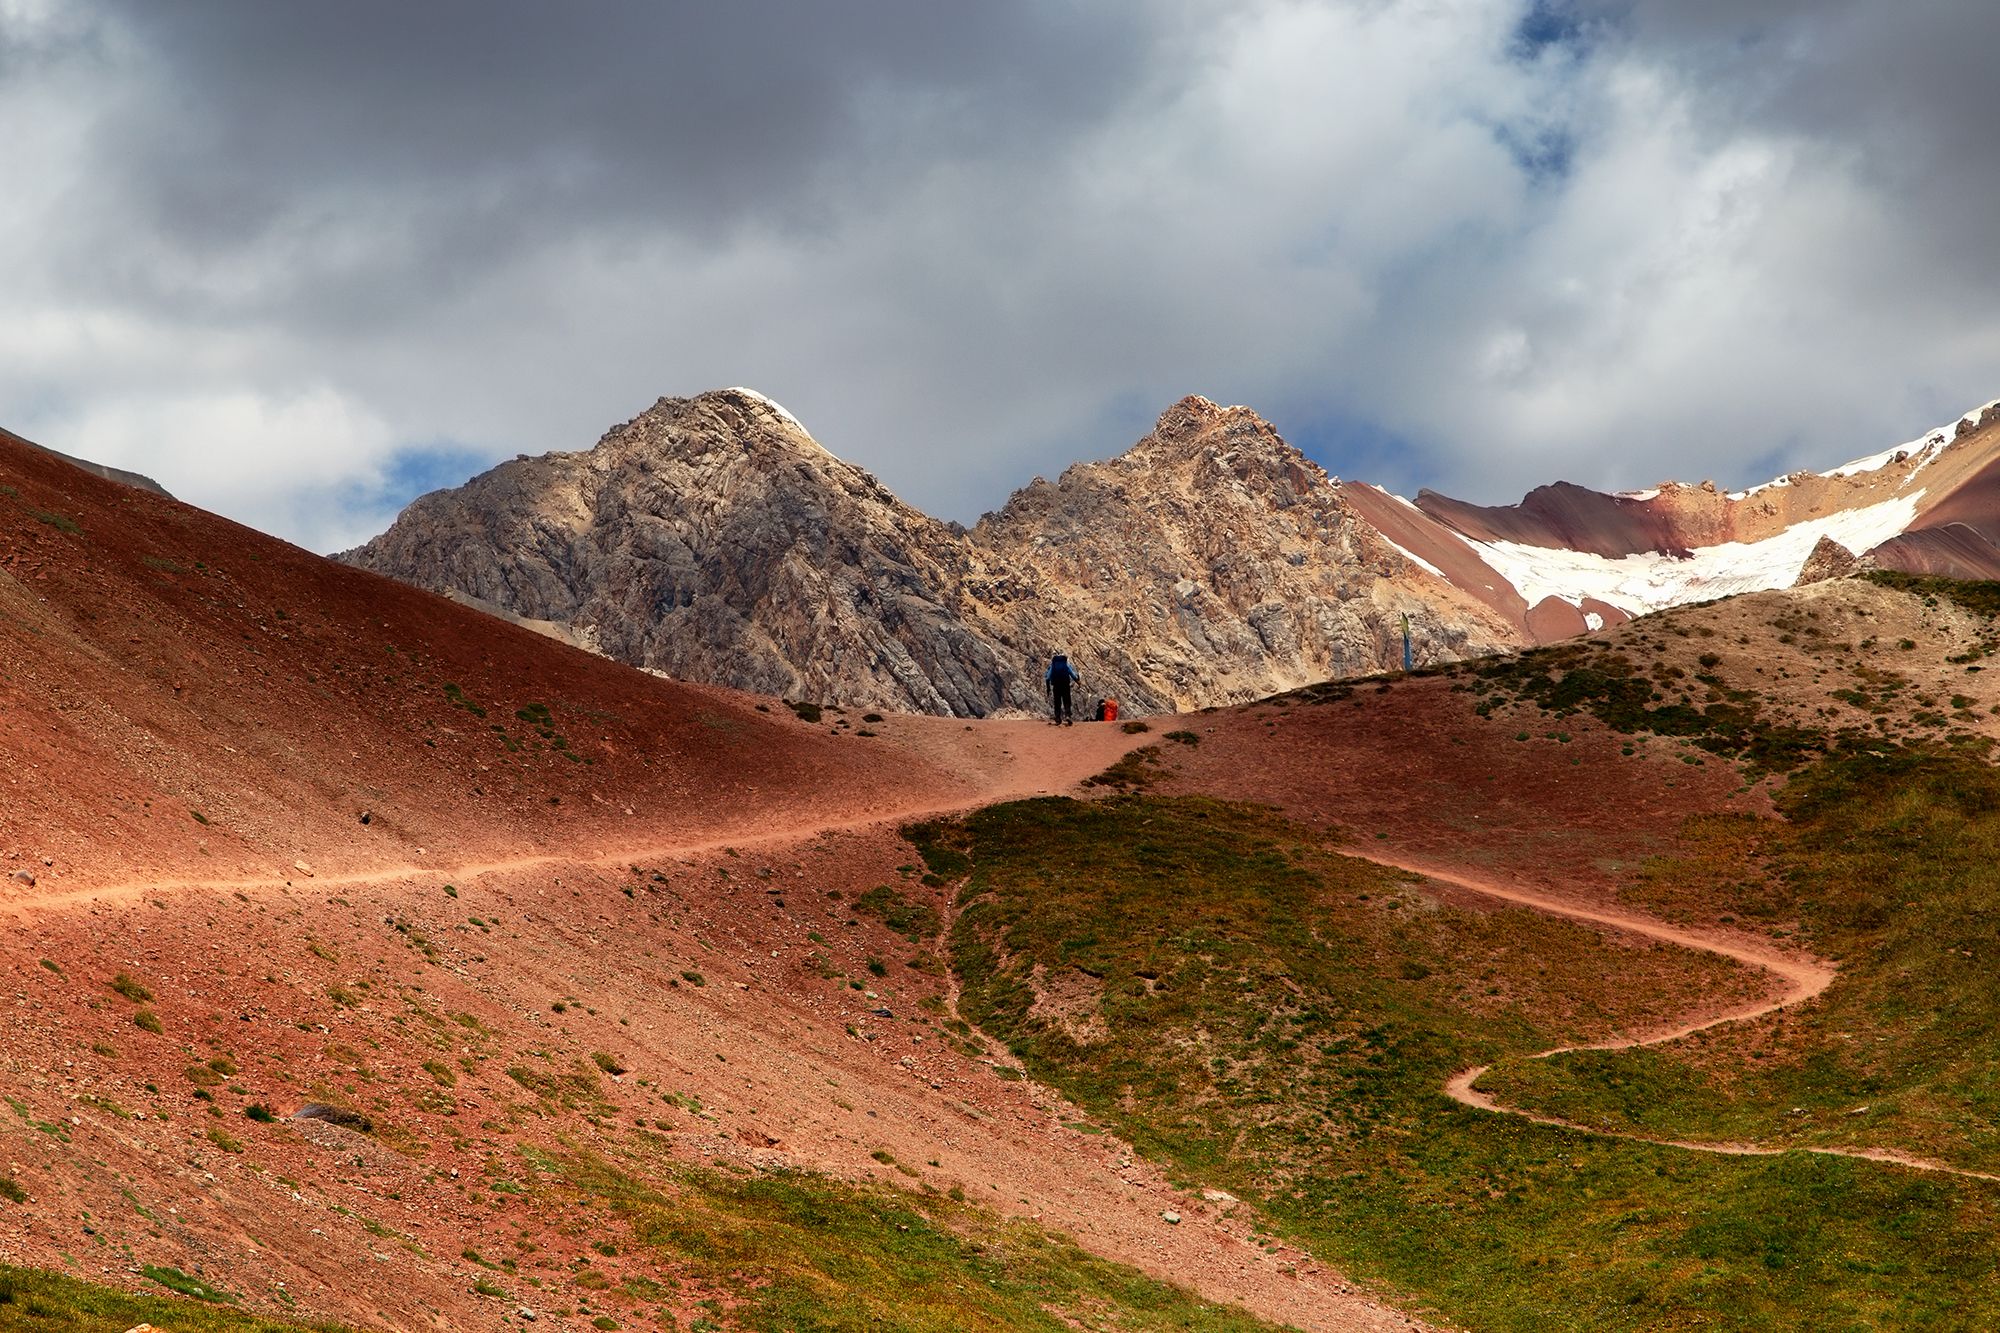 кыргызстан, памиро-алай, перевал путешественников (4150м), Элина Магалимова